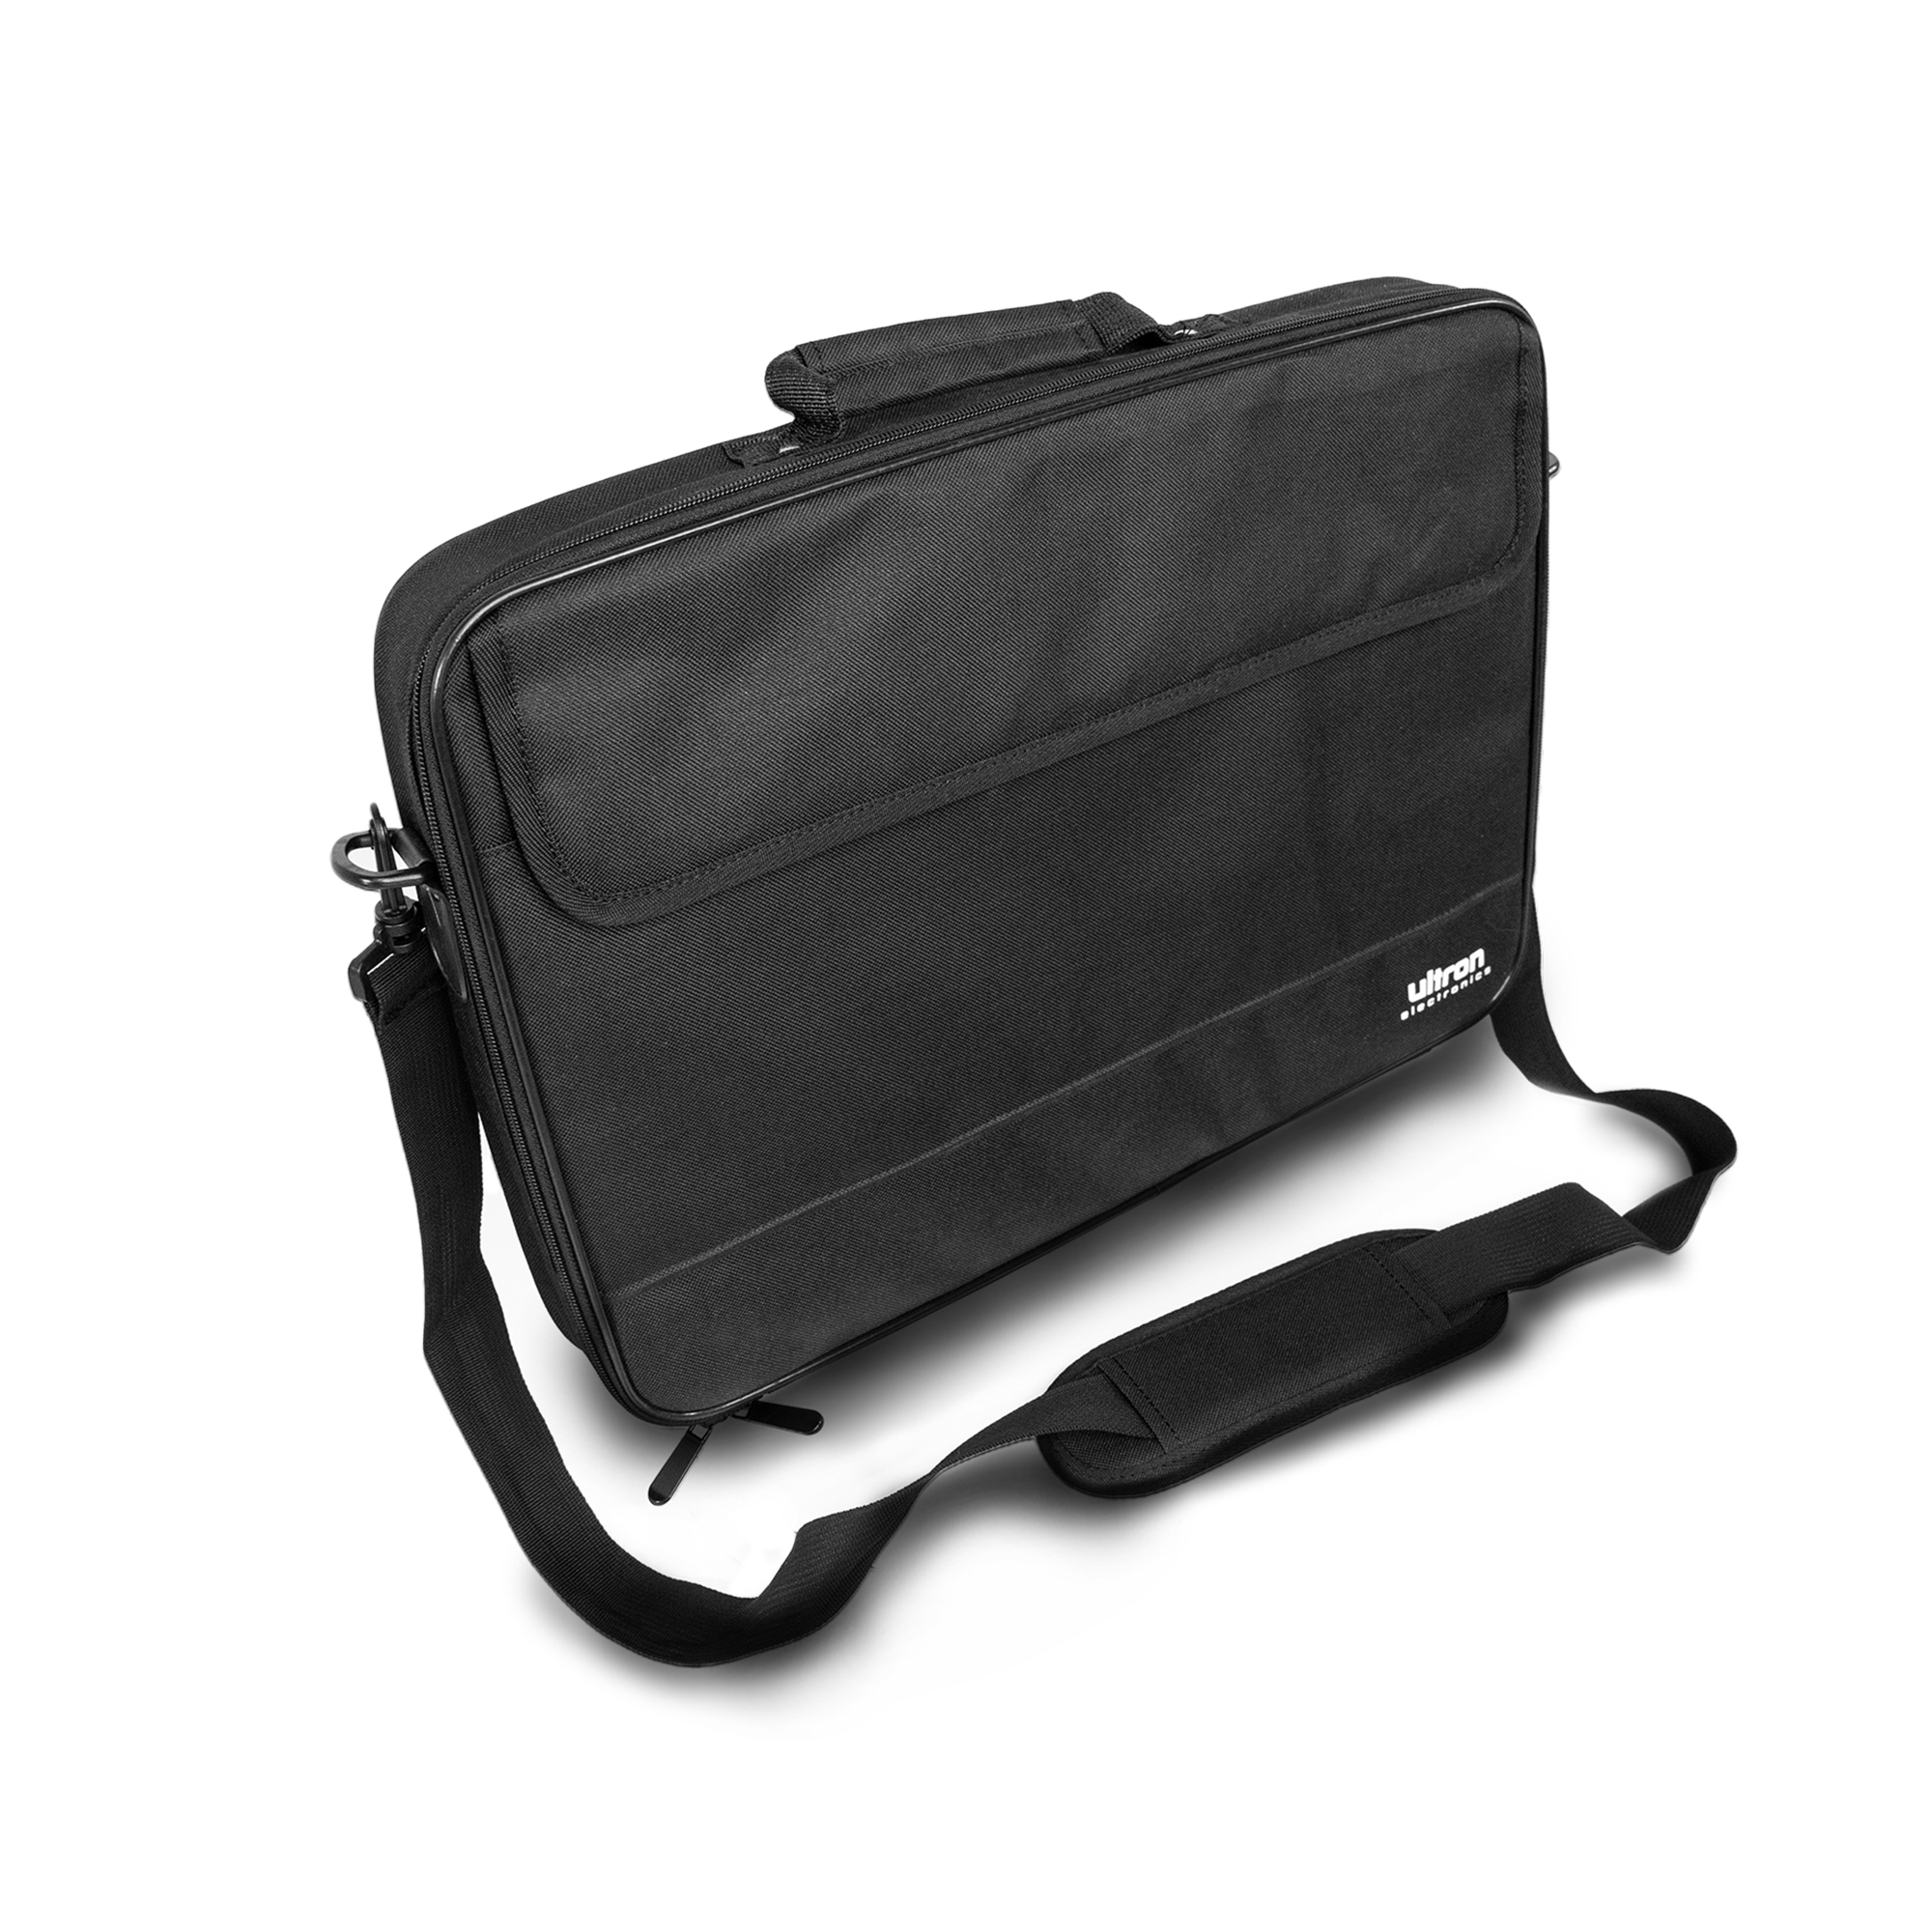 Ultron NB Tasche Case Plus 15.6" 38cm Aktenkoffer Design - Tasche